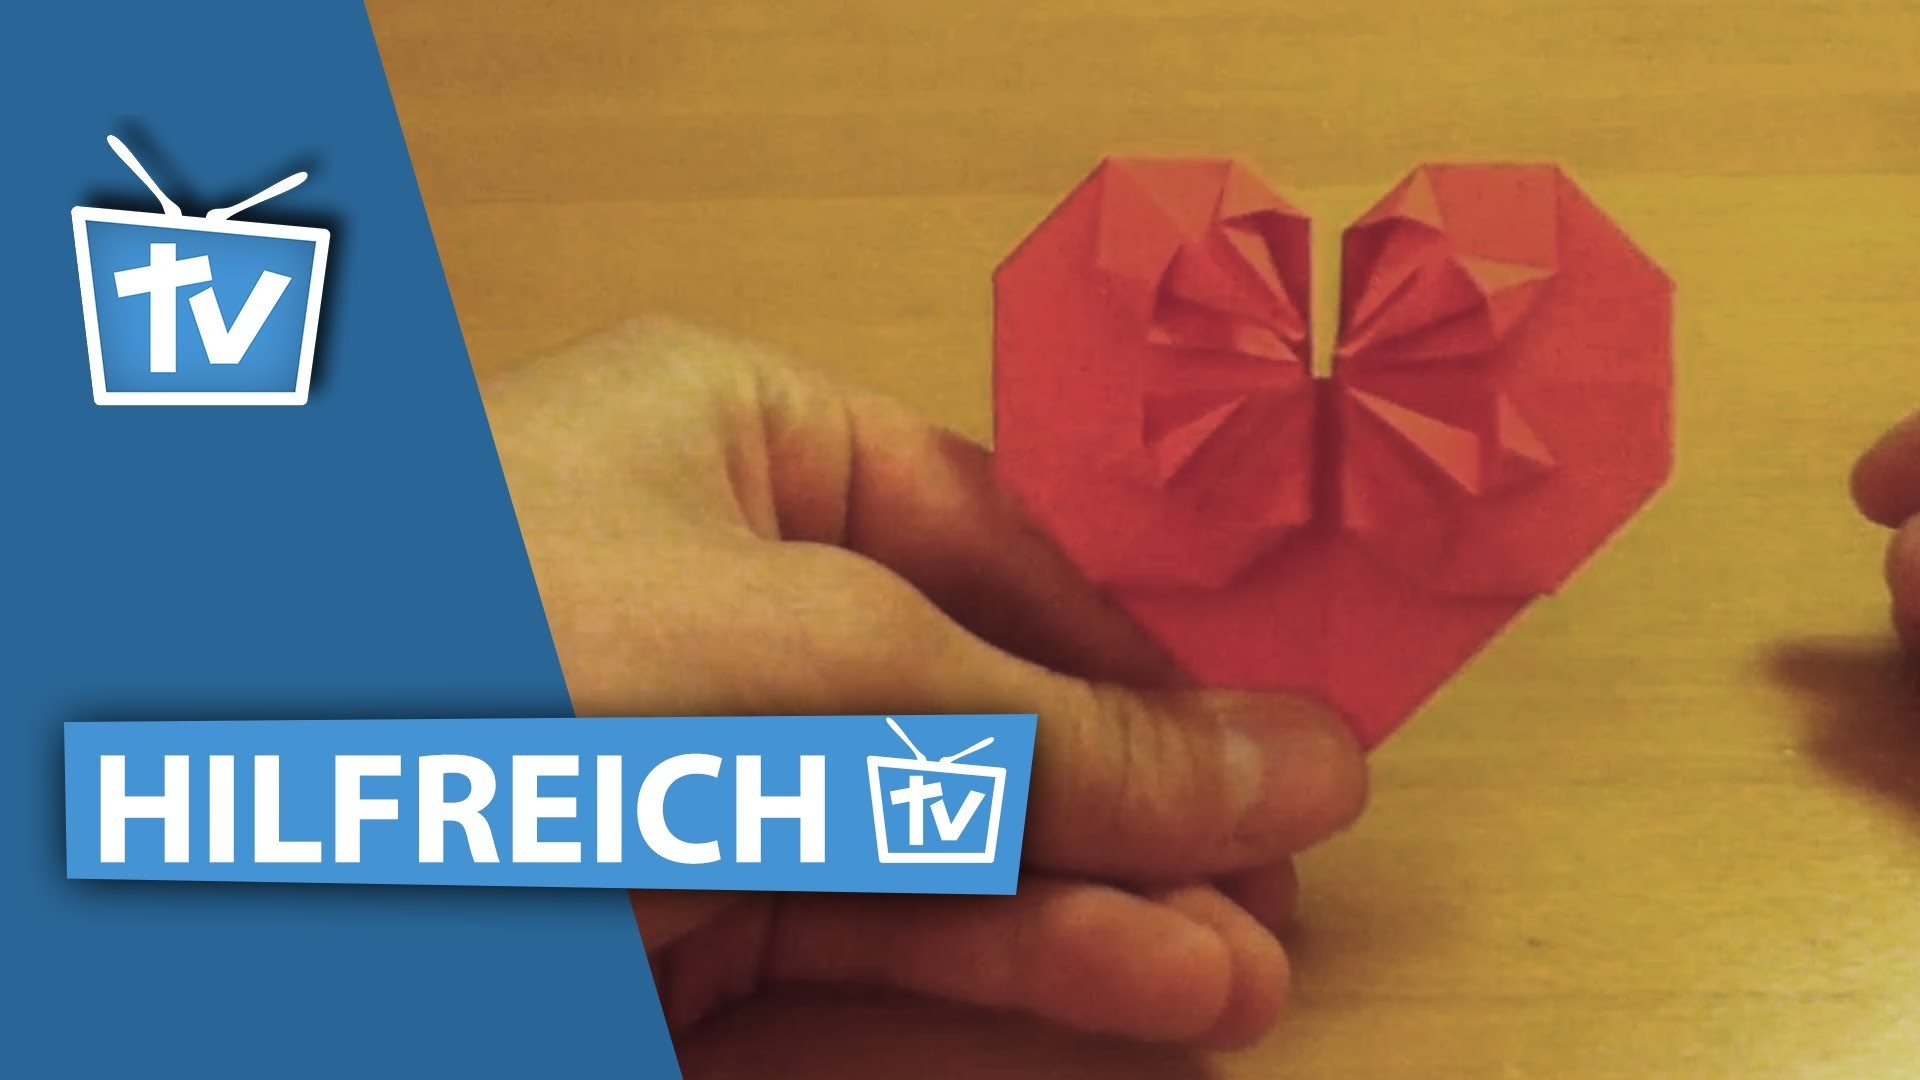 How to: Profi Origami Herz falten - 3D Origami Herz falten wie Profis Anleitung